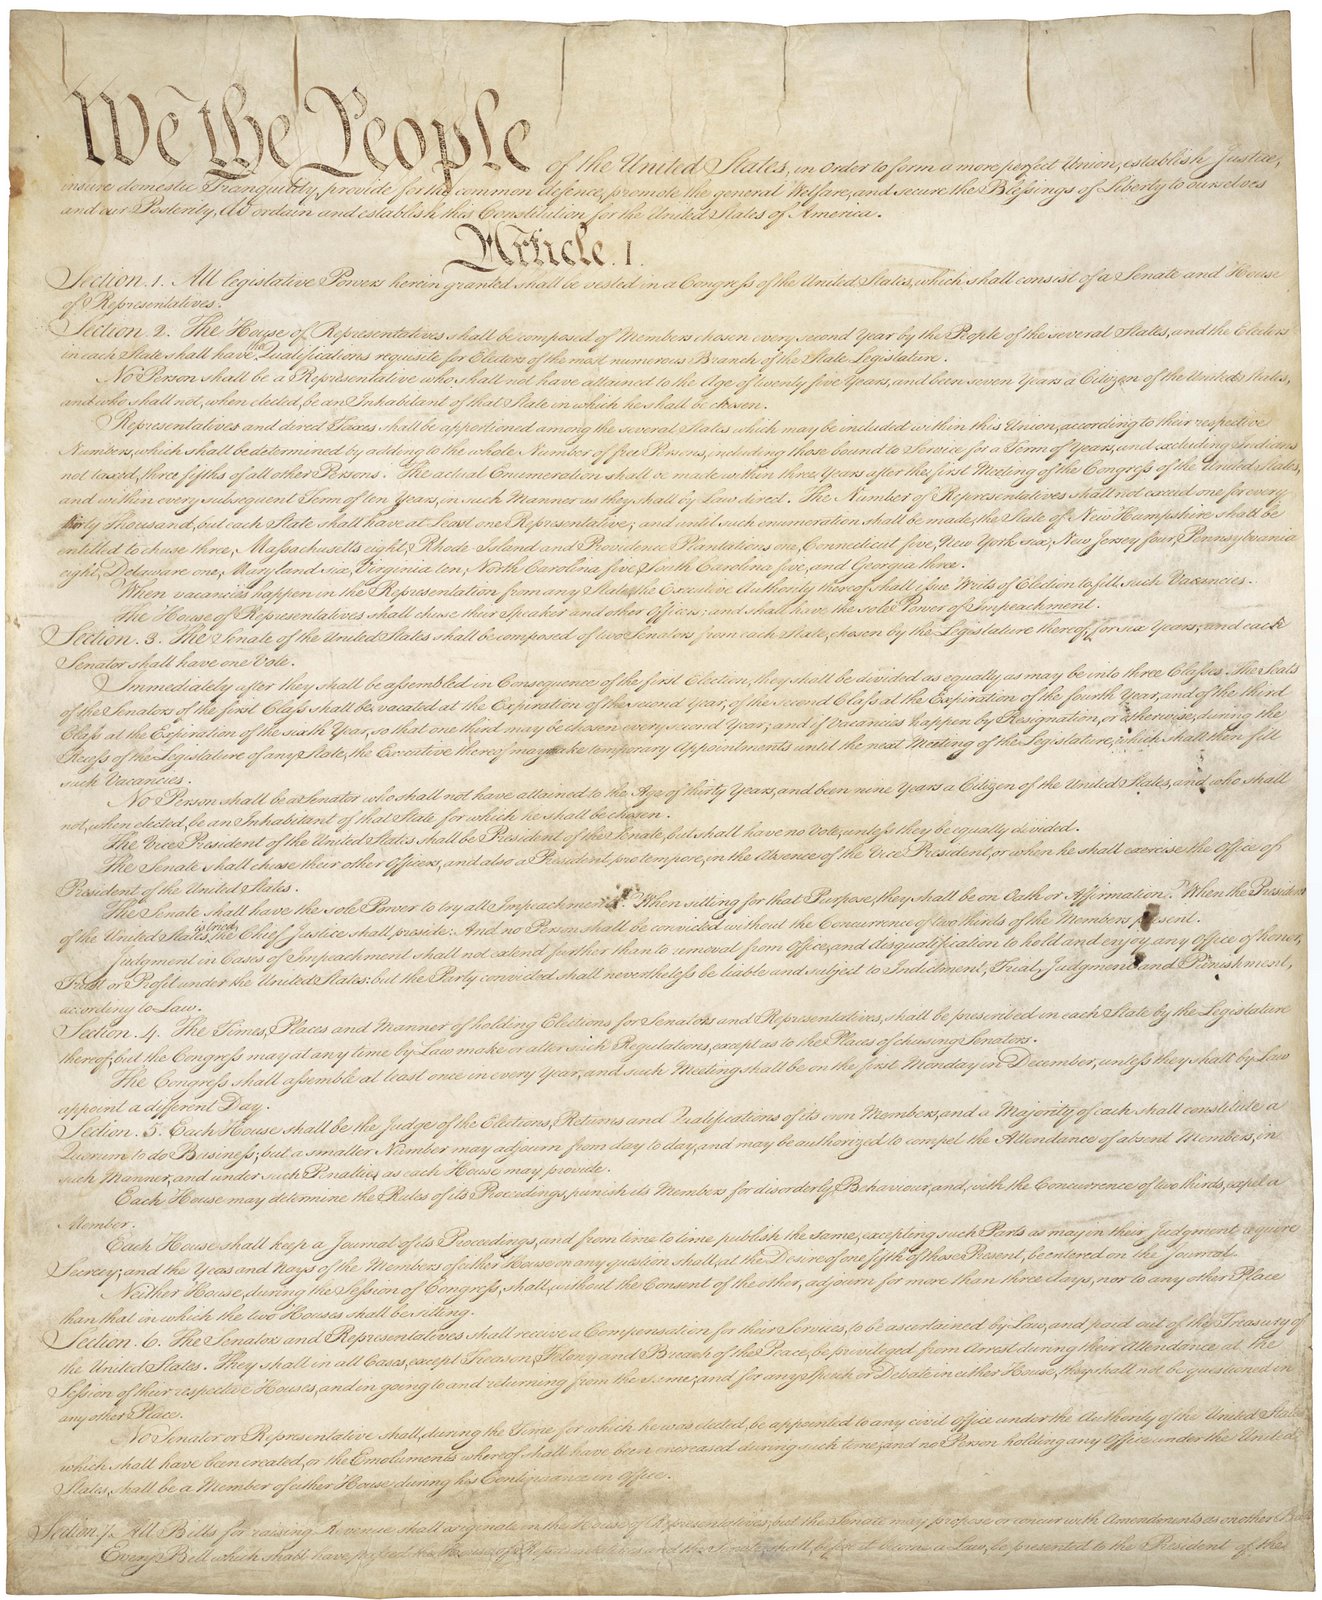 CONSTITUTION OF THE U.S.